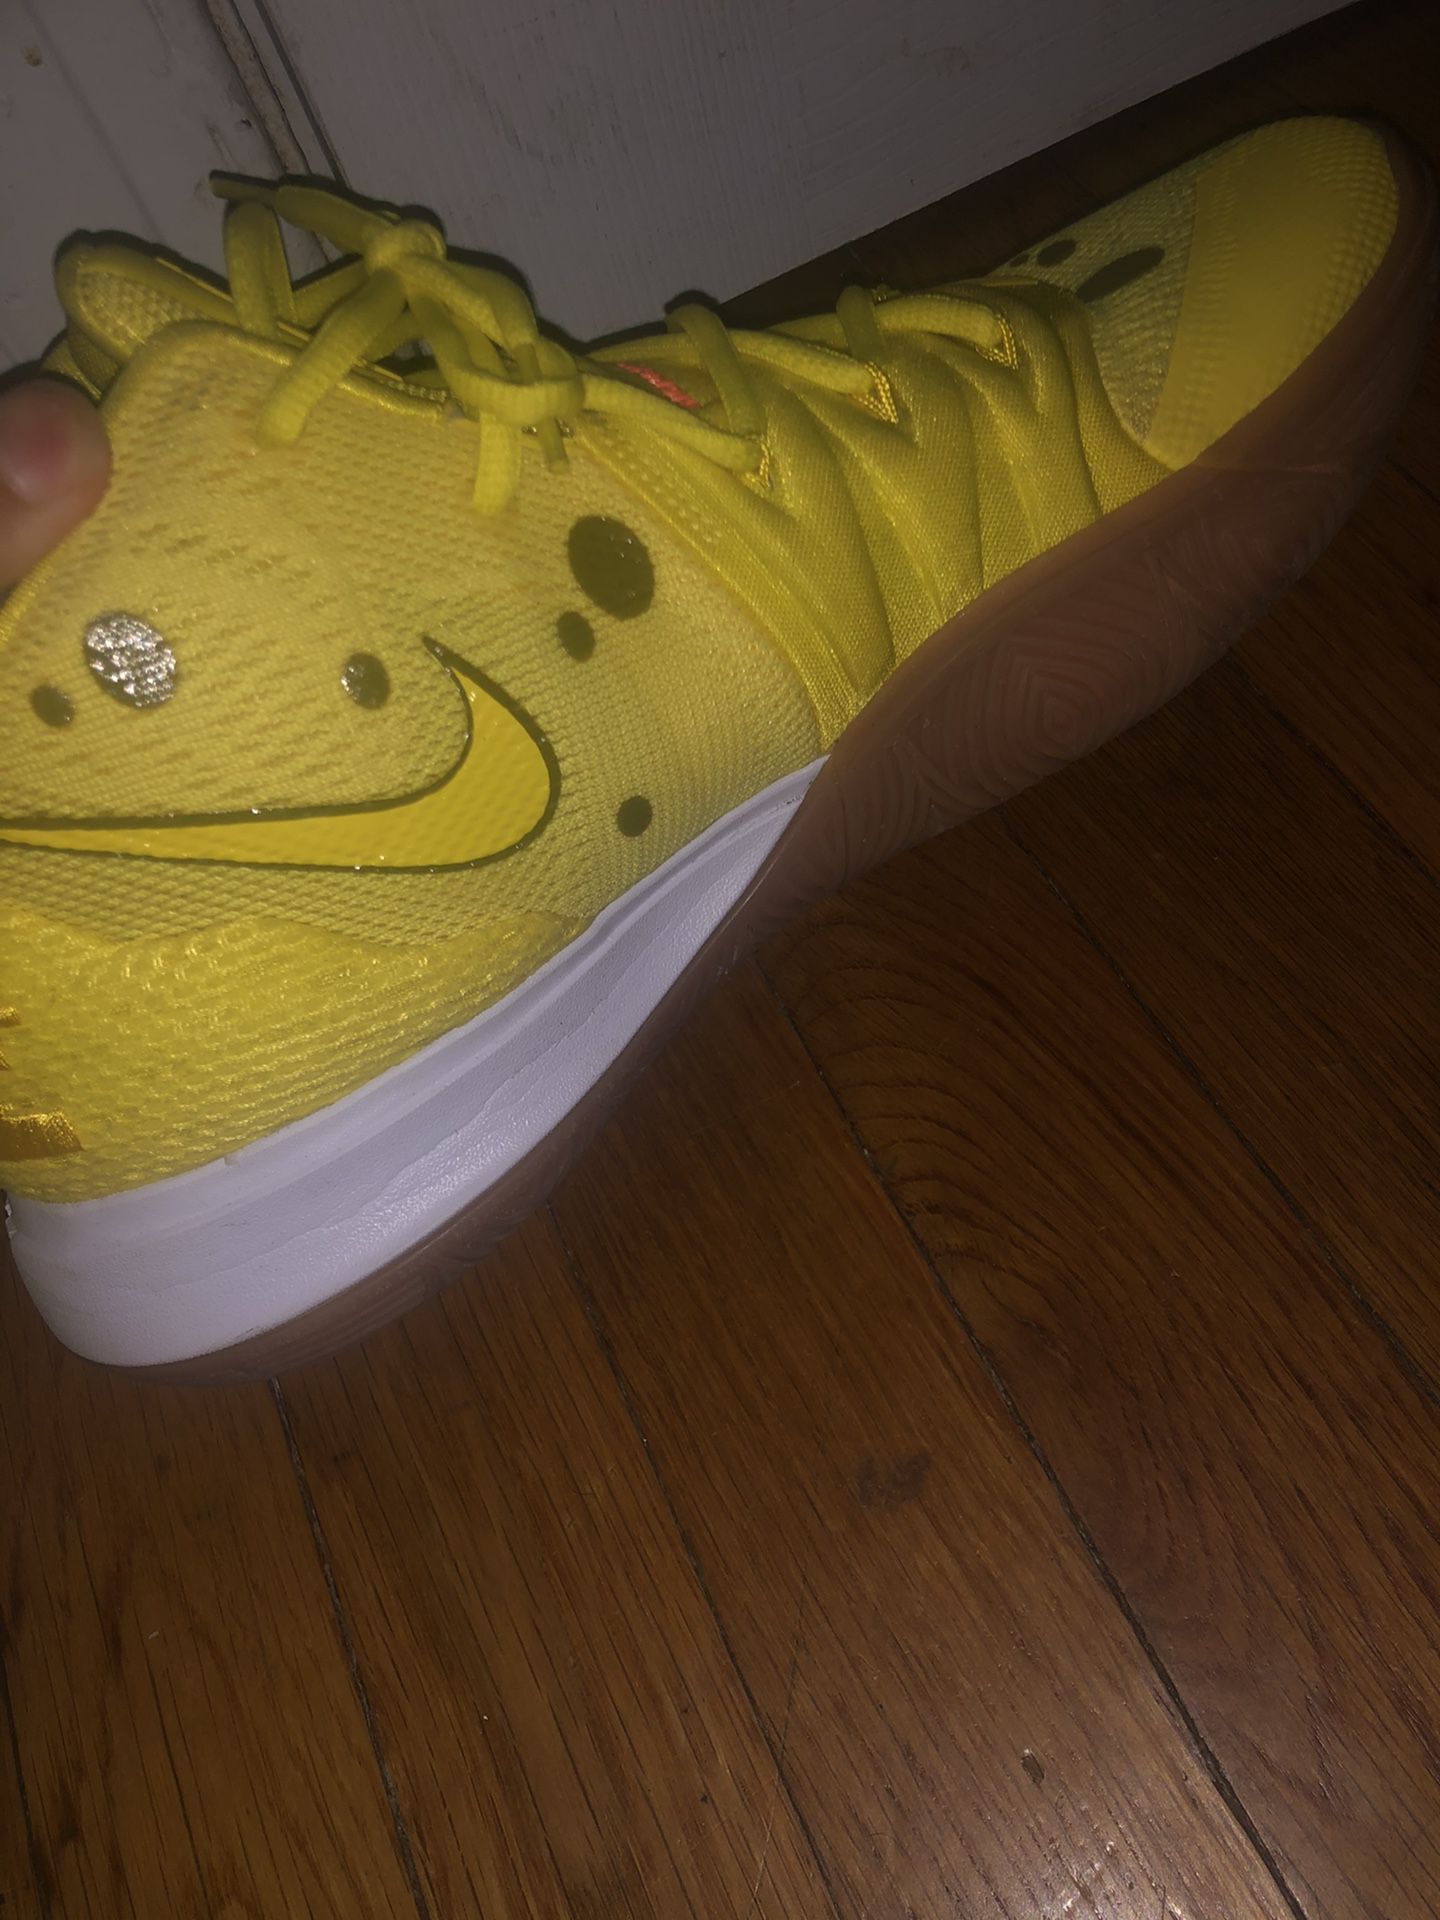 Kyrie Spongebob Shoes